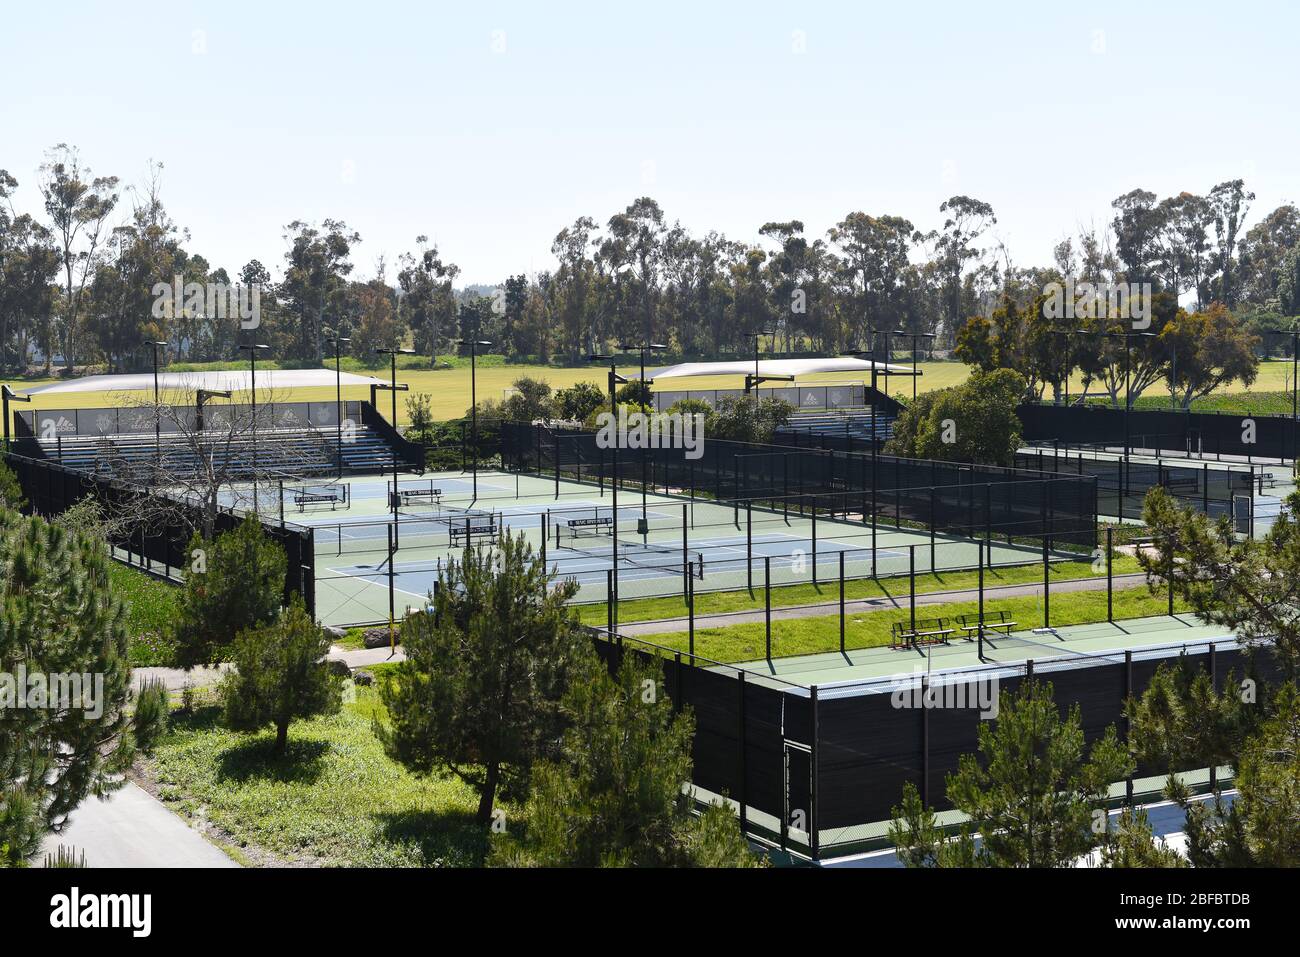 IRVINE, KALIFORNIEN - 16. APRIL 2020: Tennisplätze im Crawford Athletic Complex an der University of California Irvine, UCI. Stockfoto